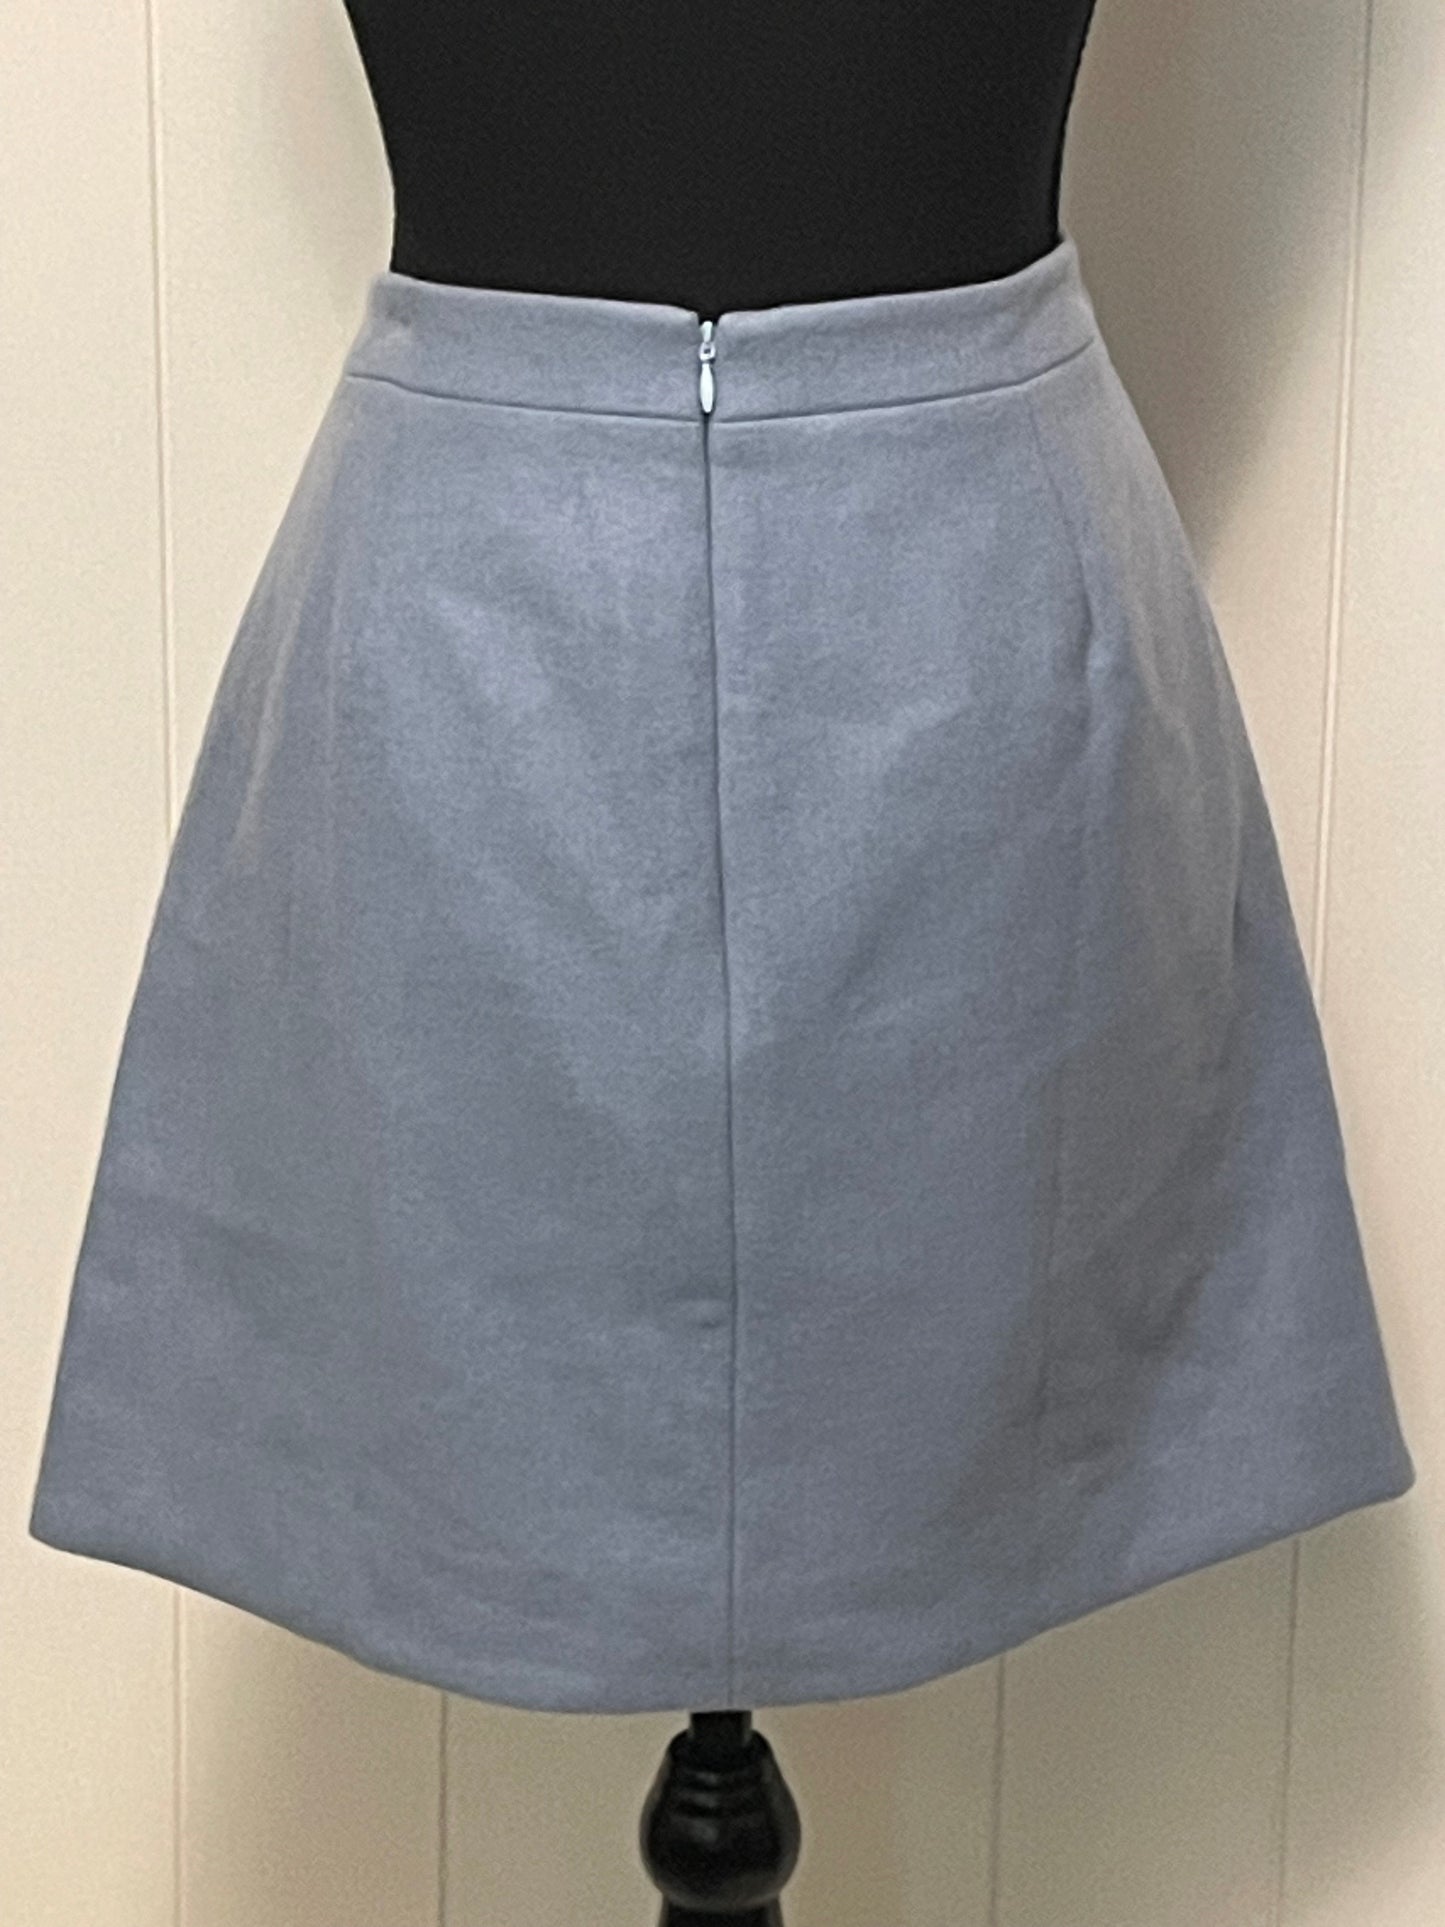 Size 6 - J Crew Mercantile blue skirt